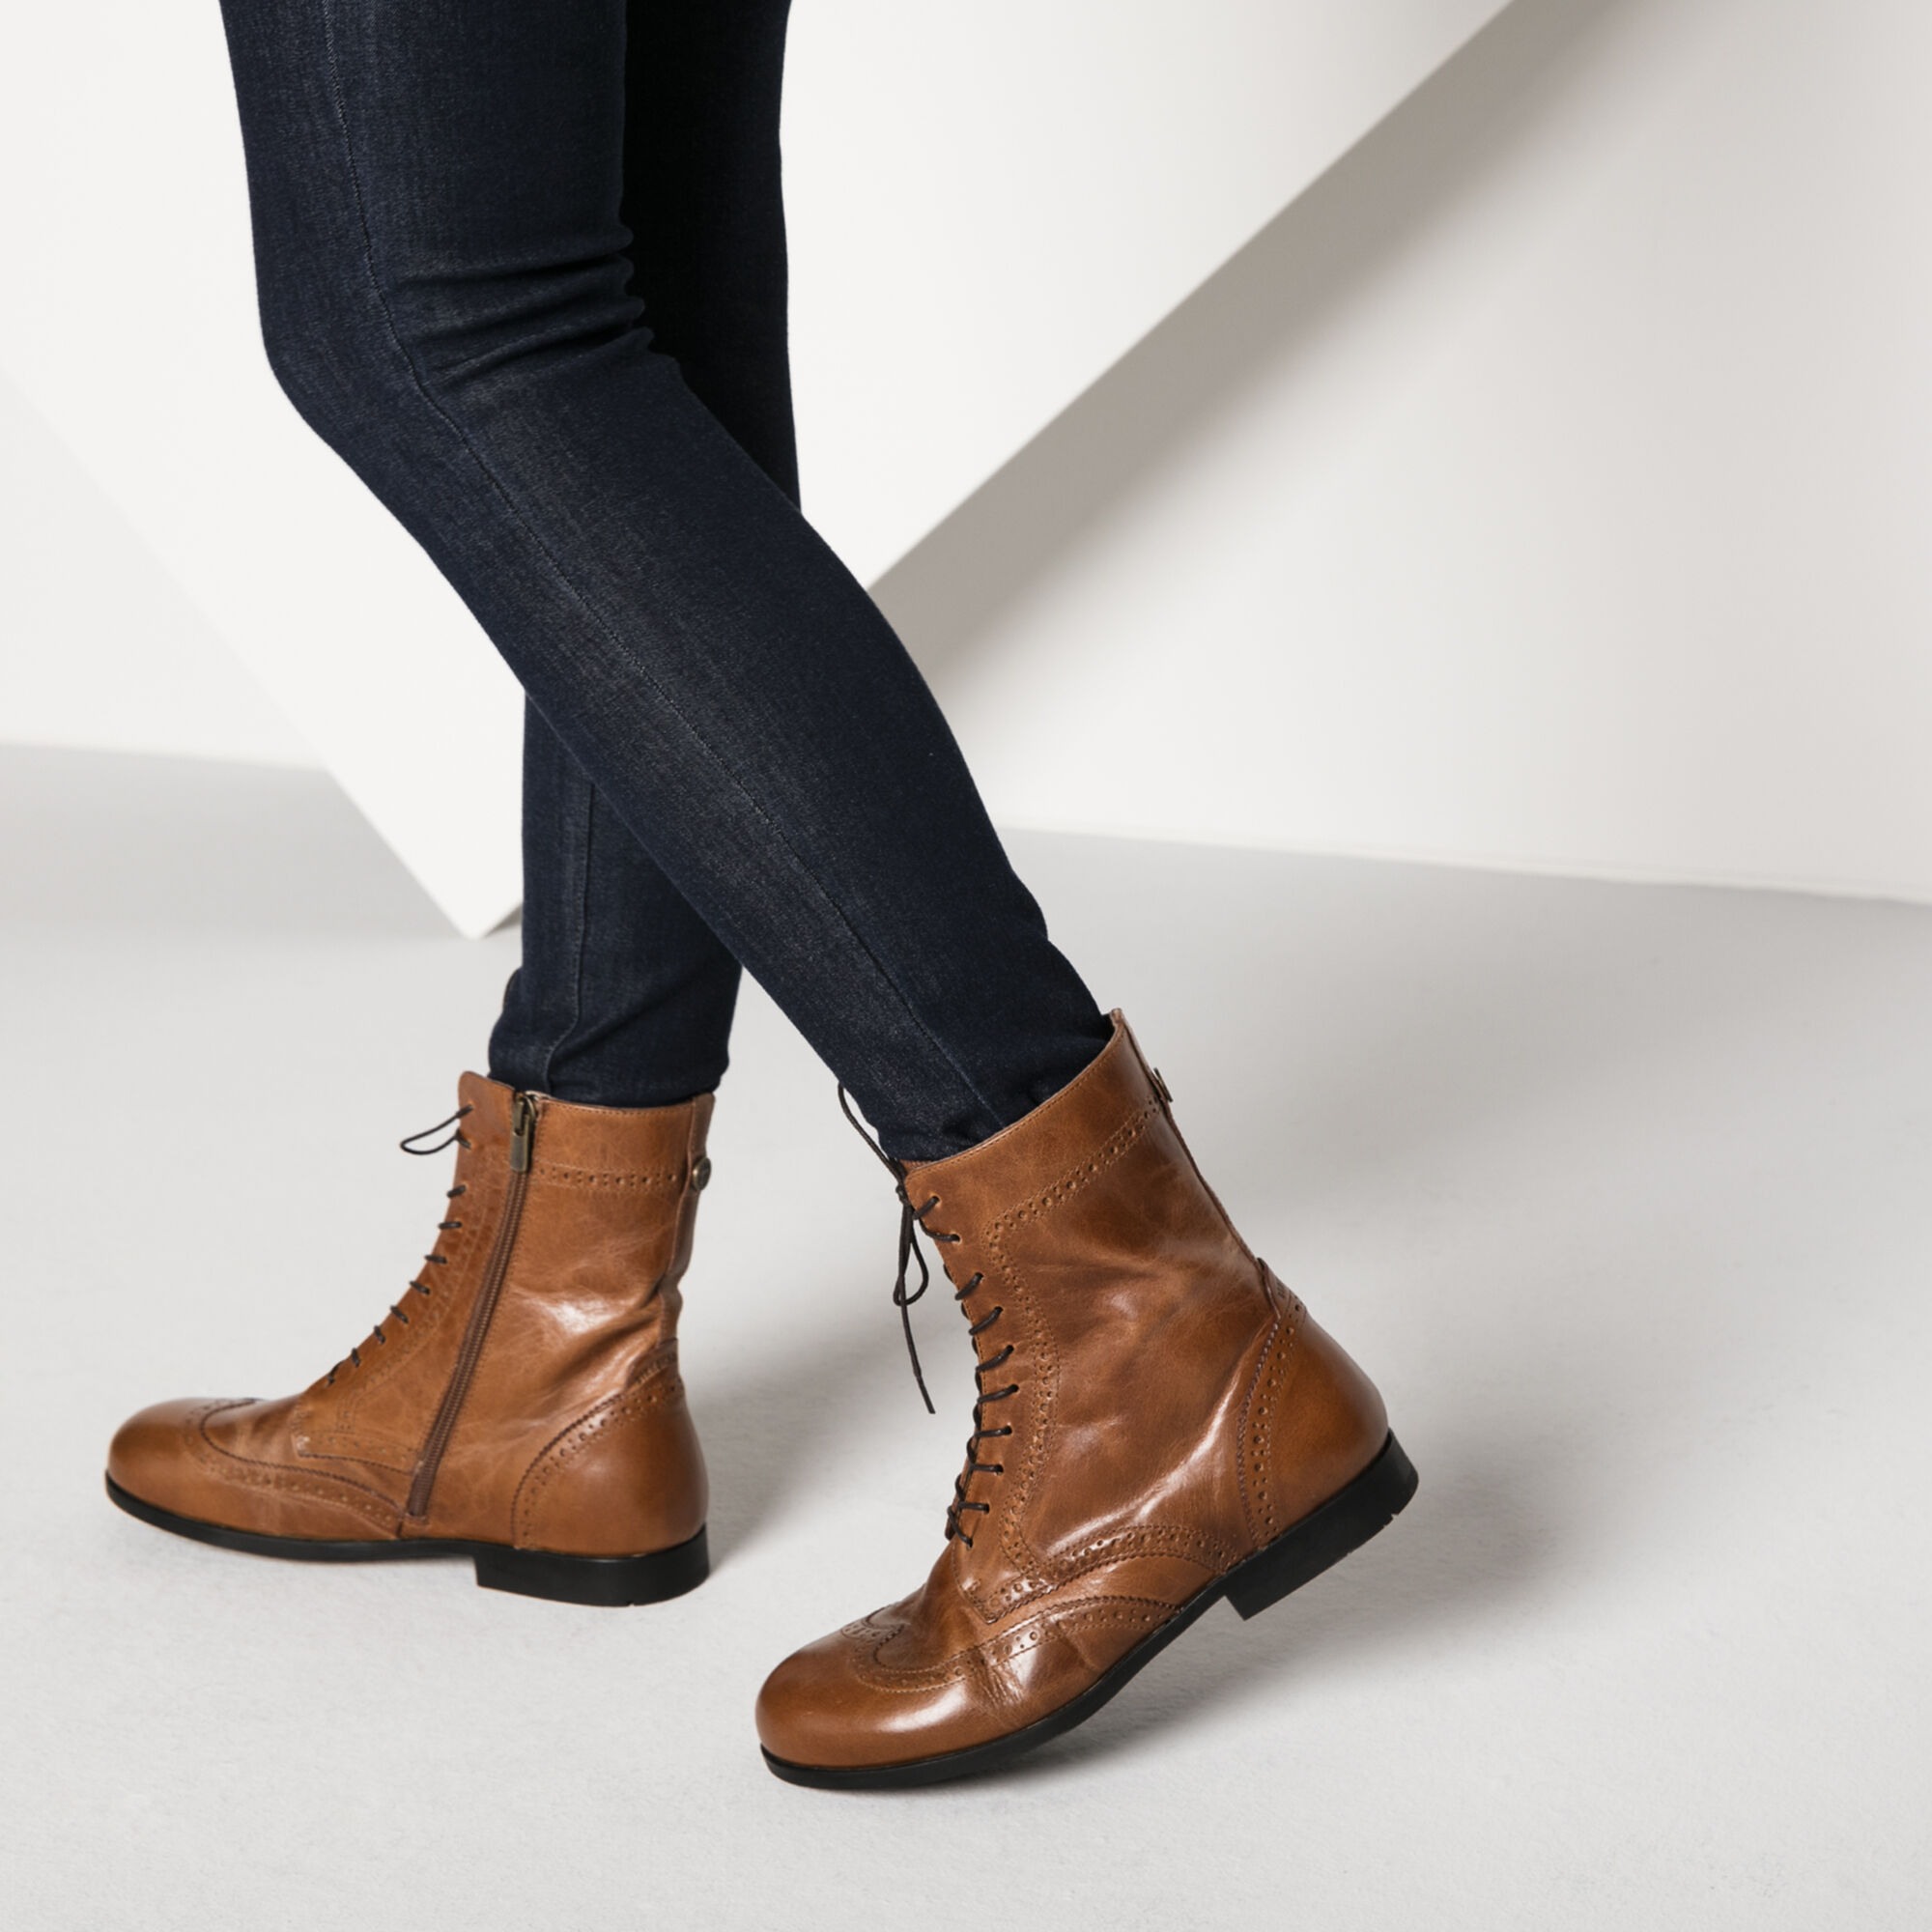 birkenstocks boots review